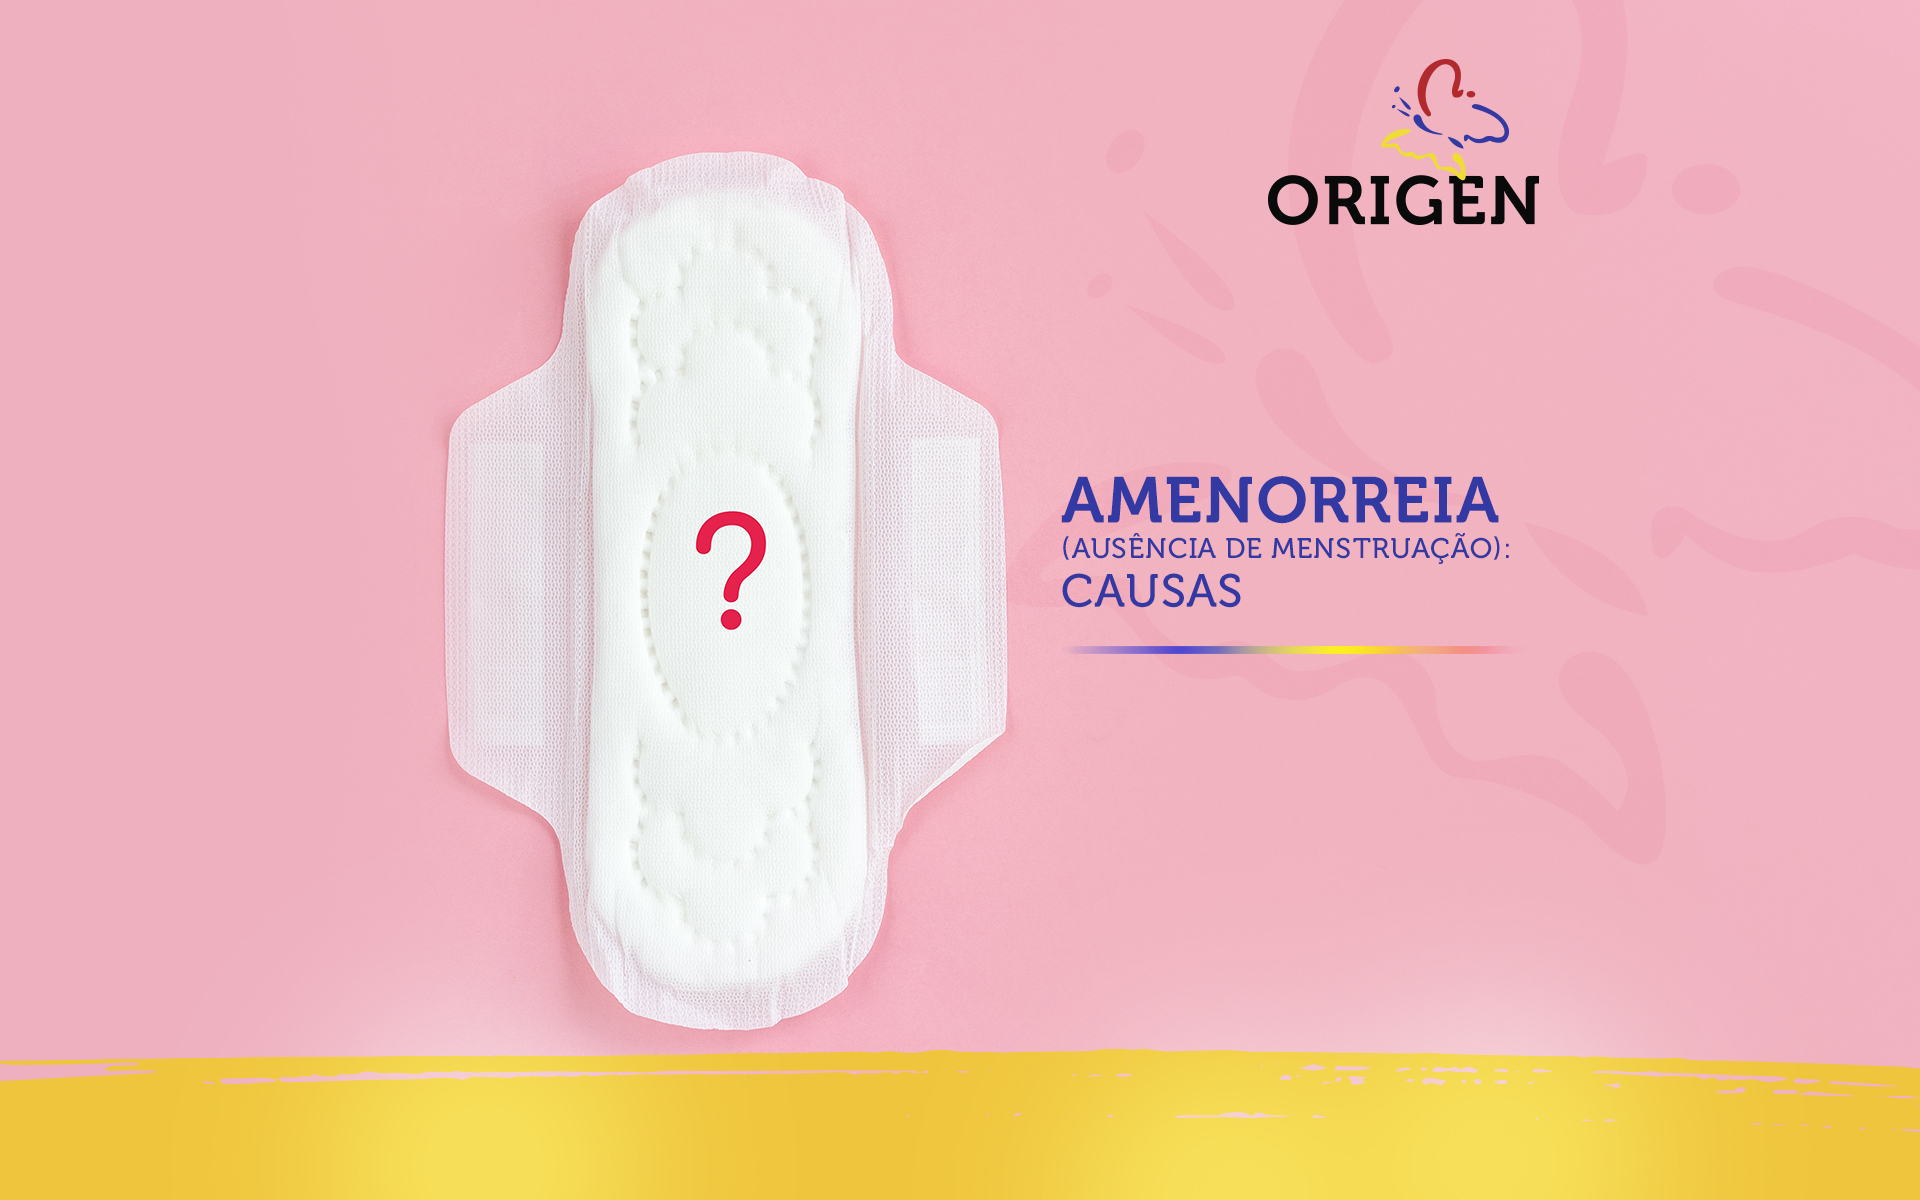 Amenorreia (ausência de menstruação): causas